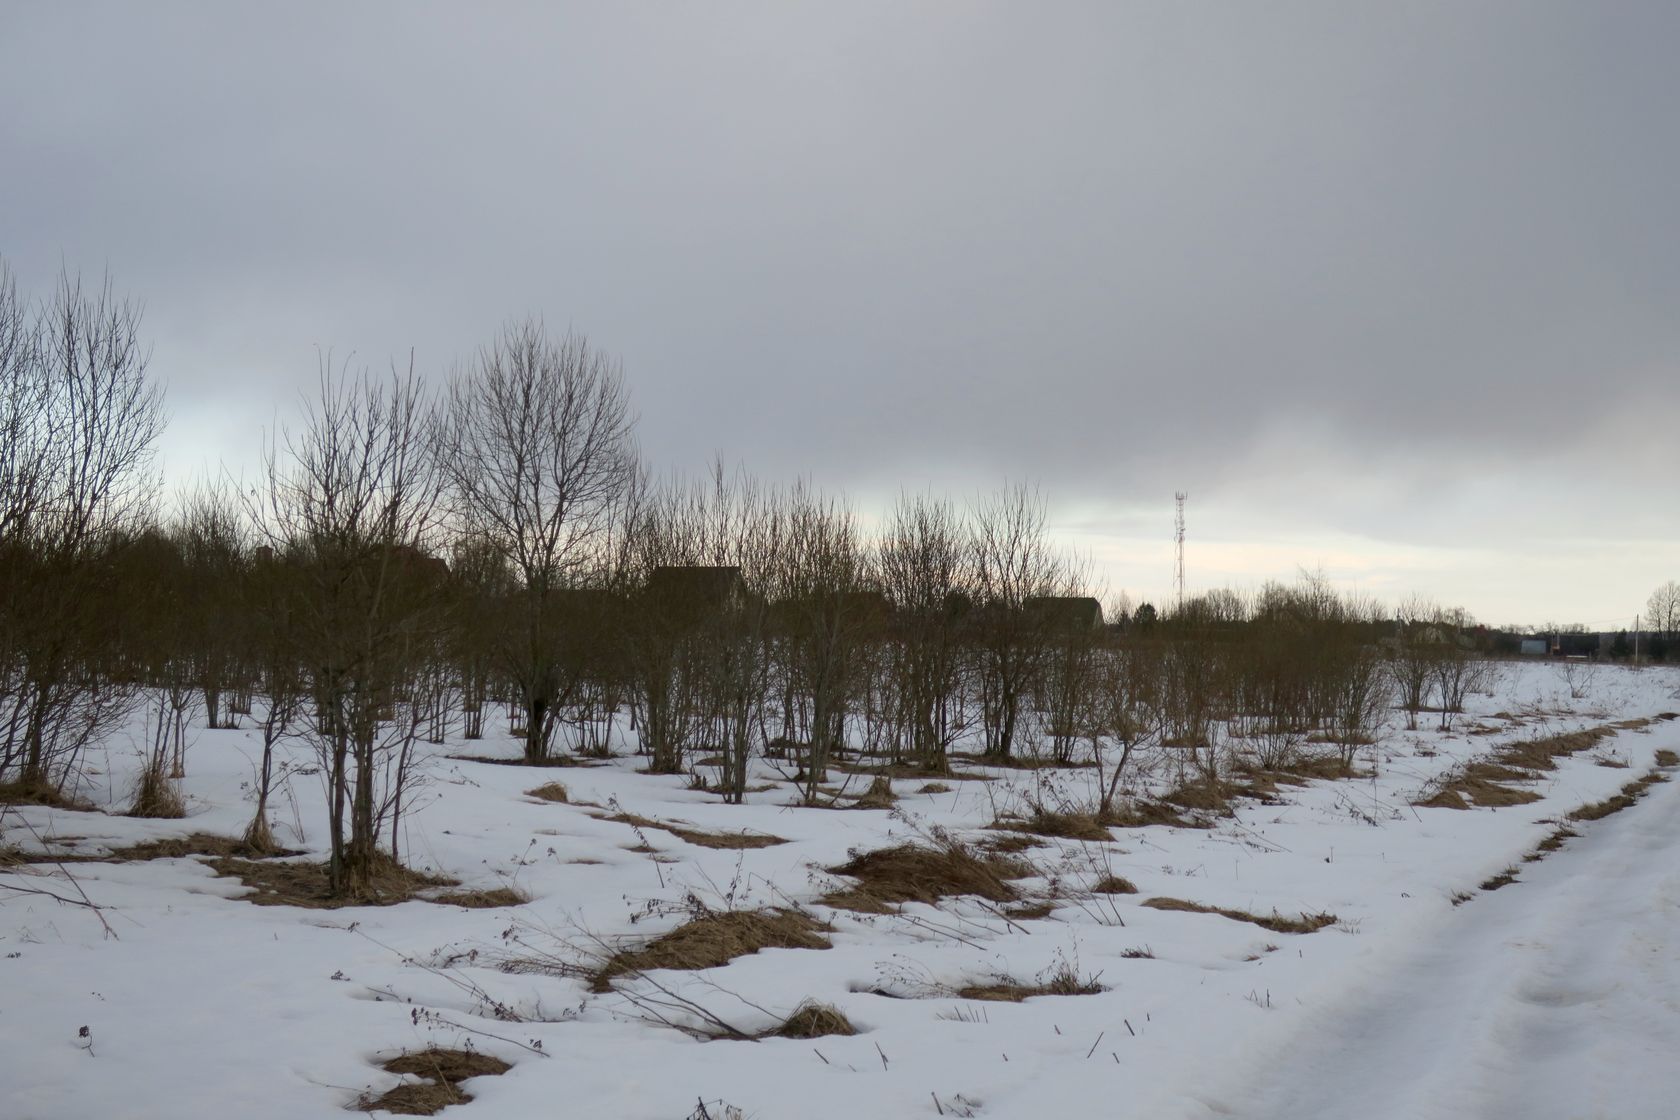 Ерденево, image of landscape/habitat.